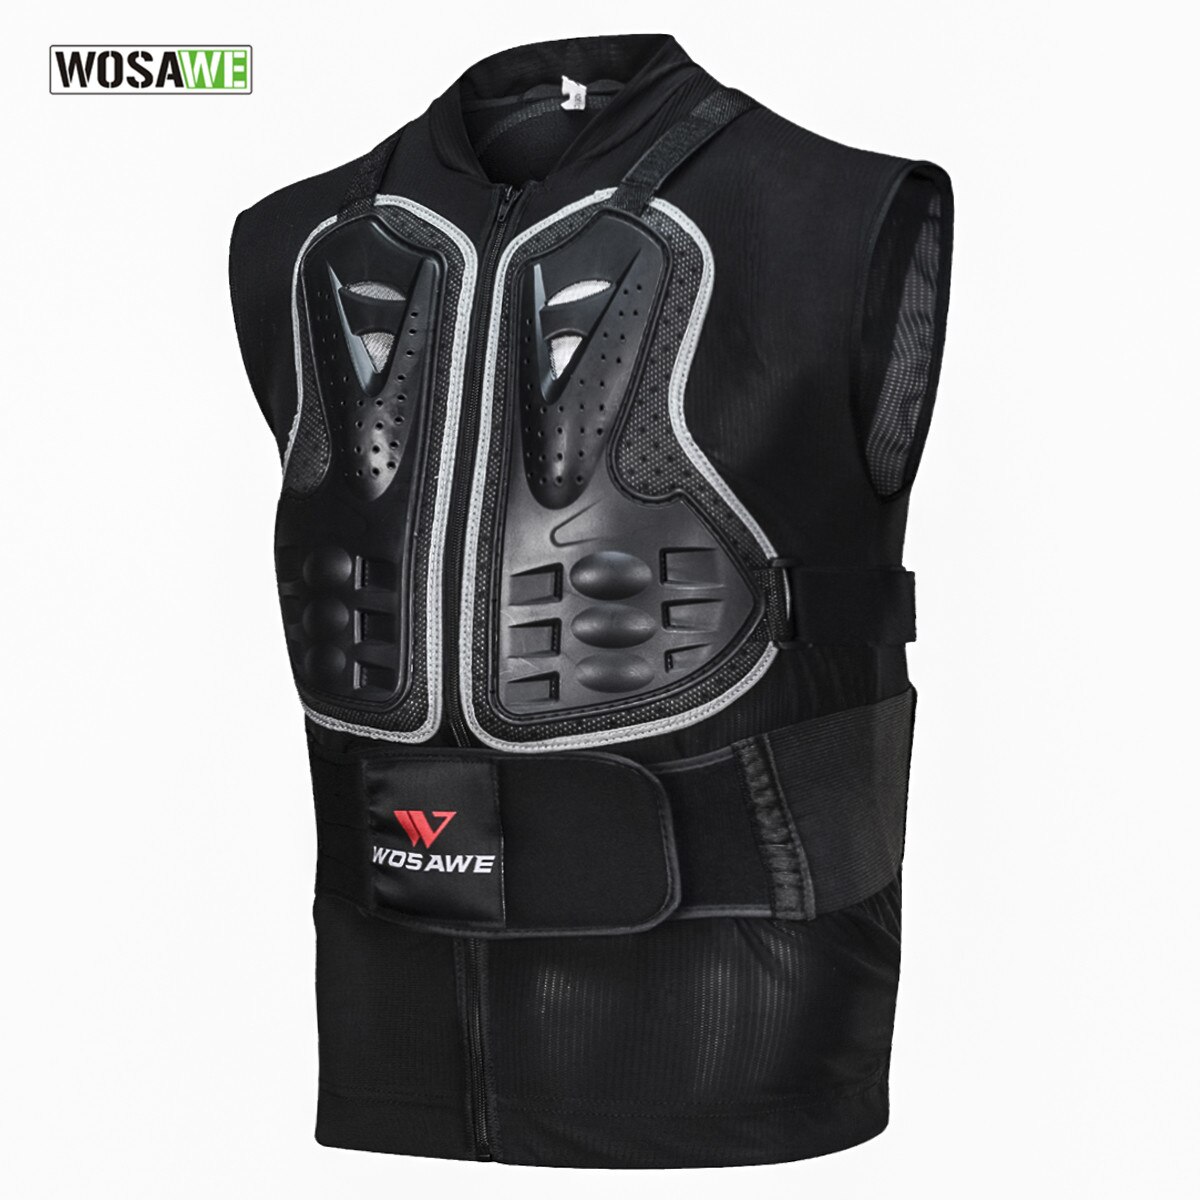 WOSAWE Motorfiets Armor Vest Motocross Fietsen Apparatuur Cool Mesh Body Beschermende Off-Road Racing Borst Protector Schaatsen Ski